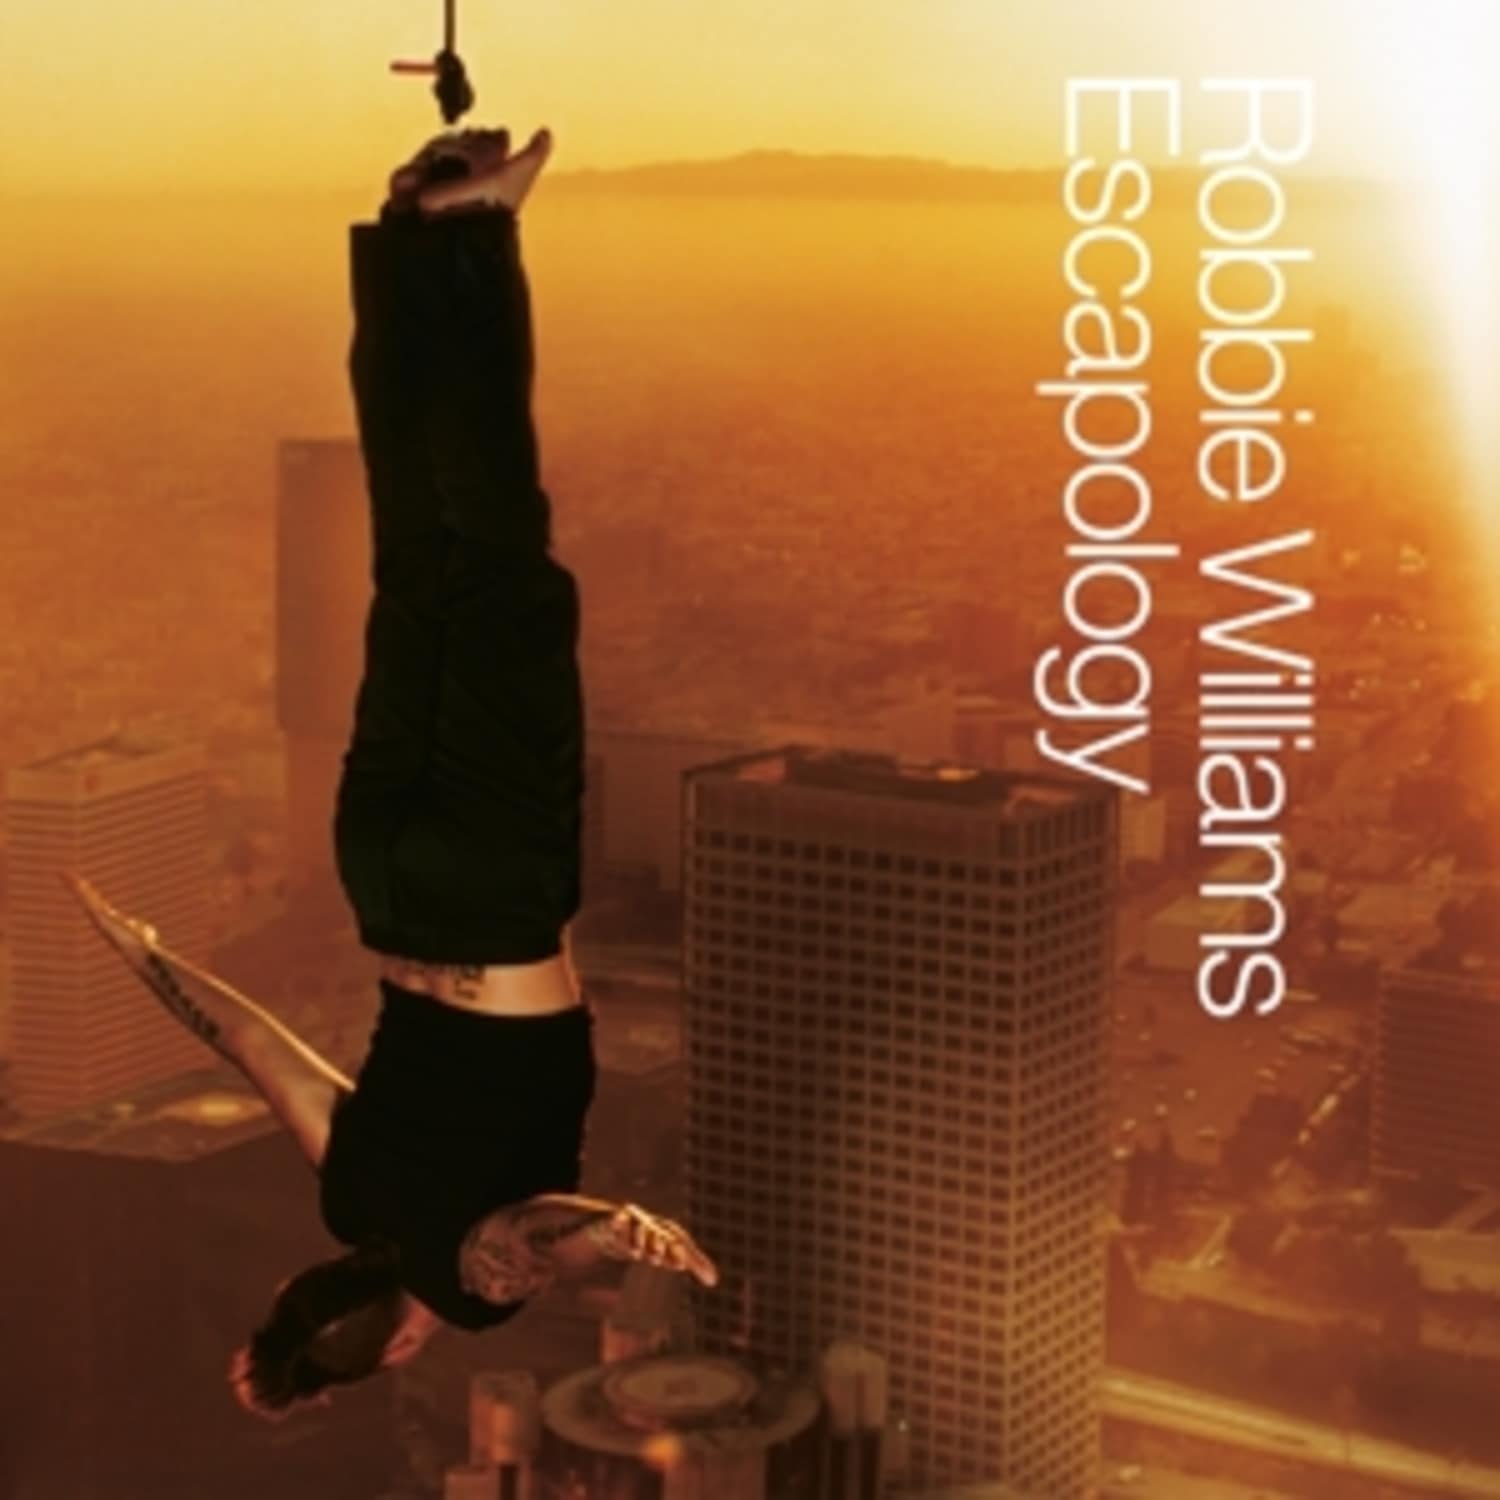 Robbie Williams - ESCAPOLOGY 